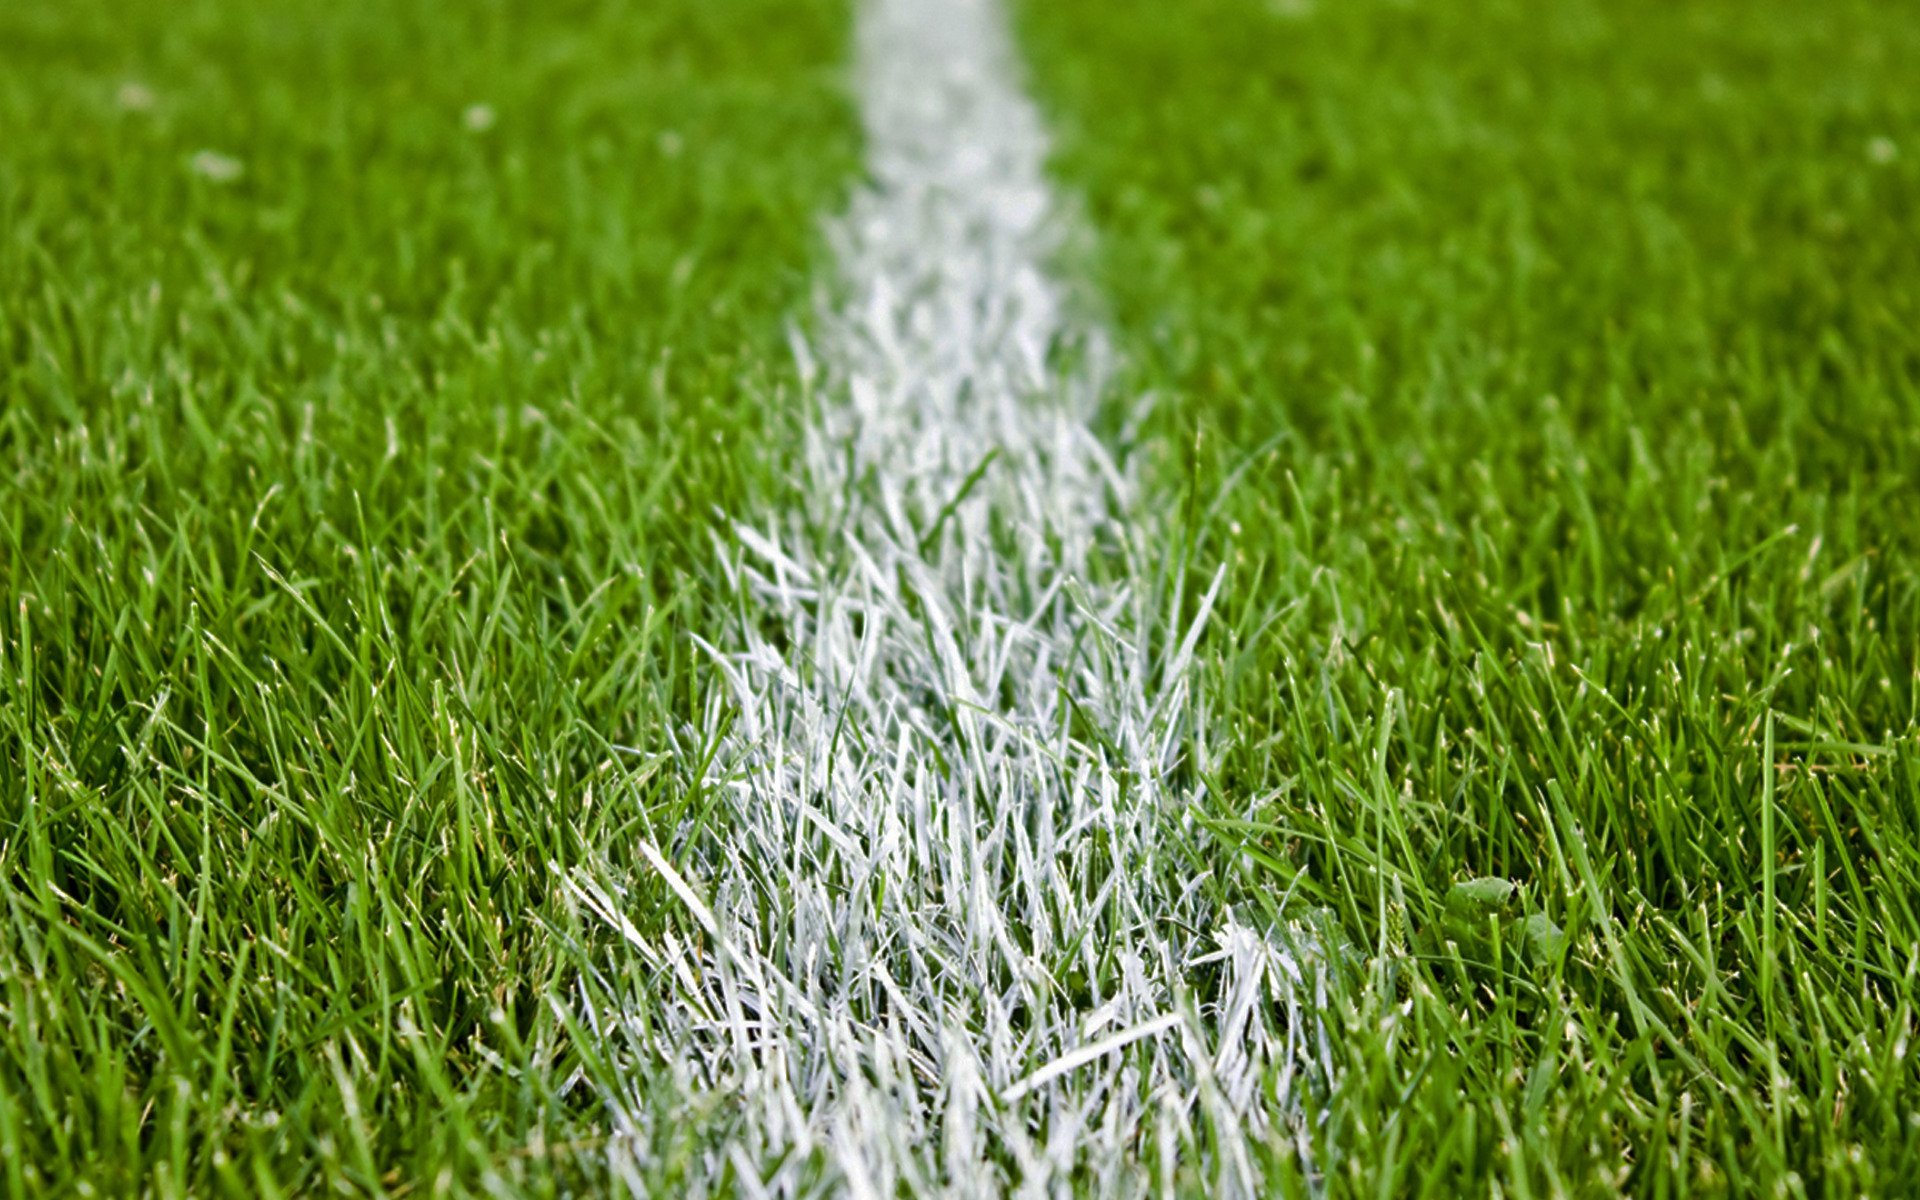 football on grass